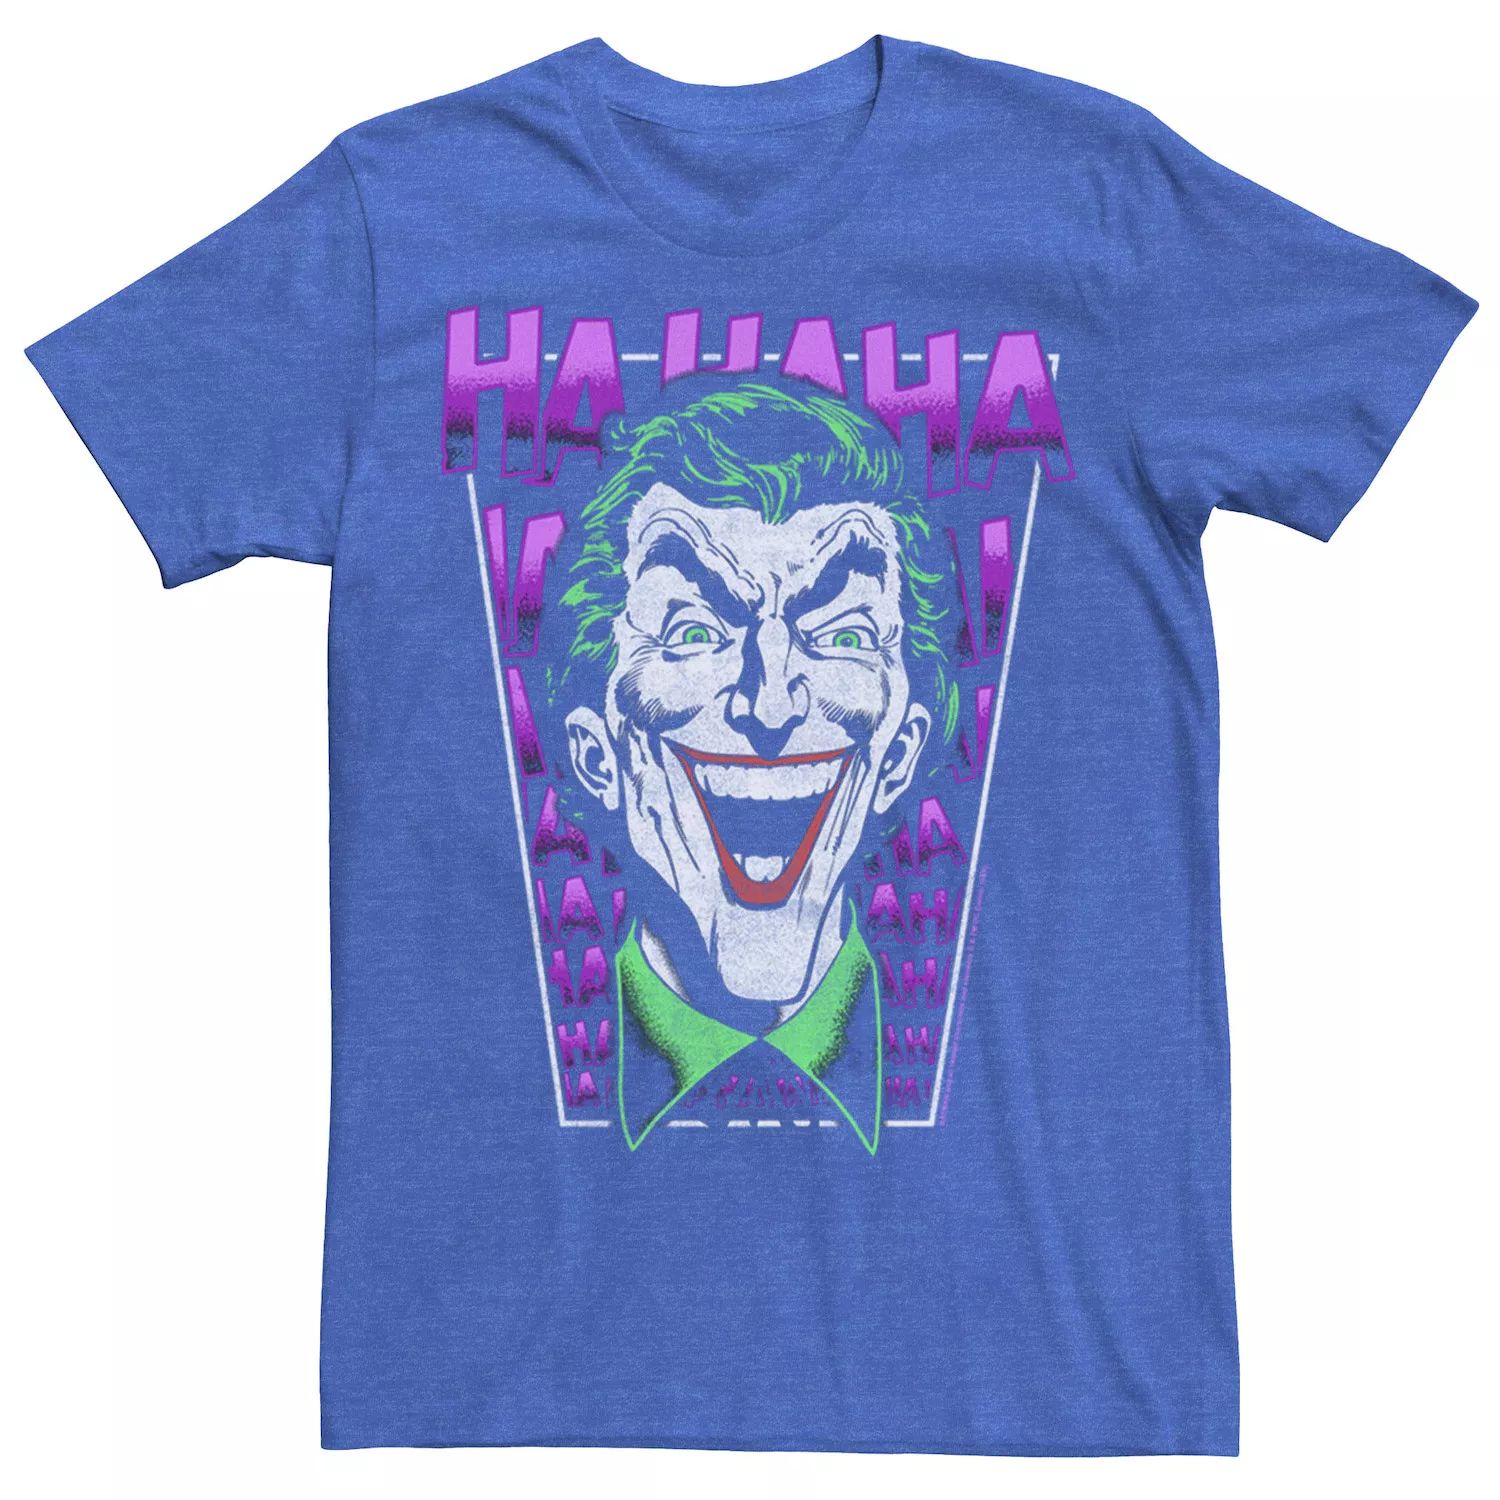 Мужская футболка The Joker HAHAHA с большим лицом DC Comics